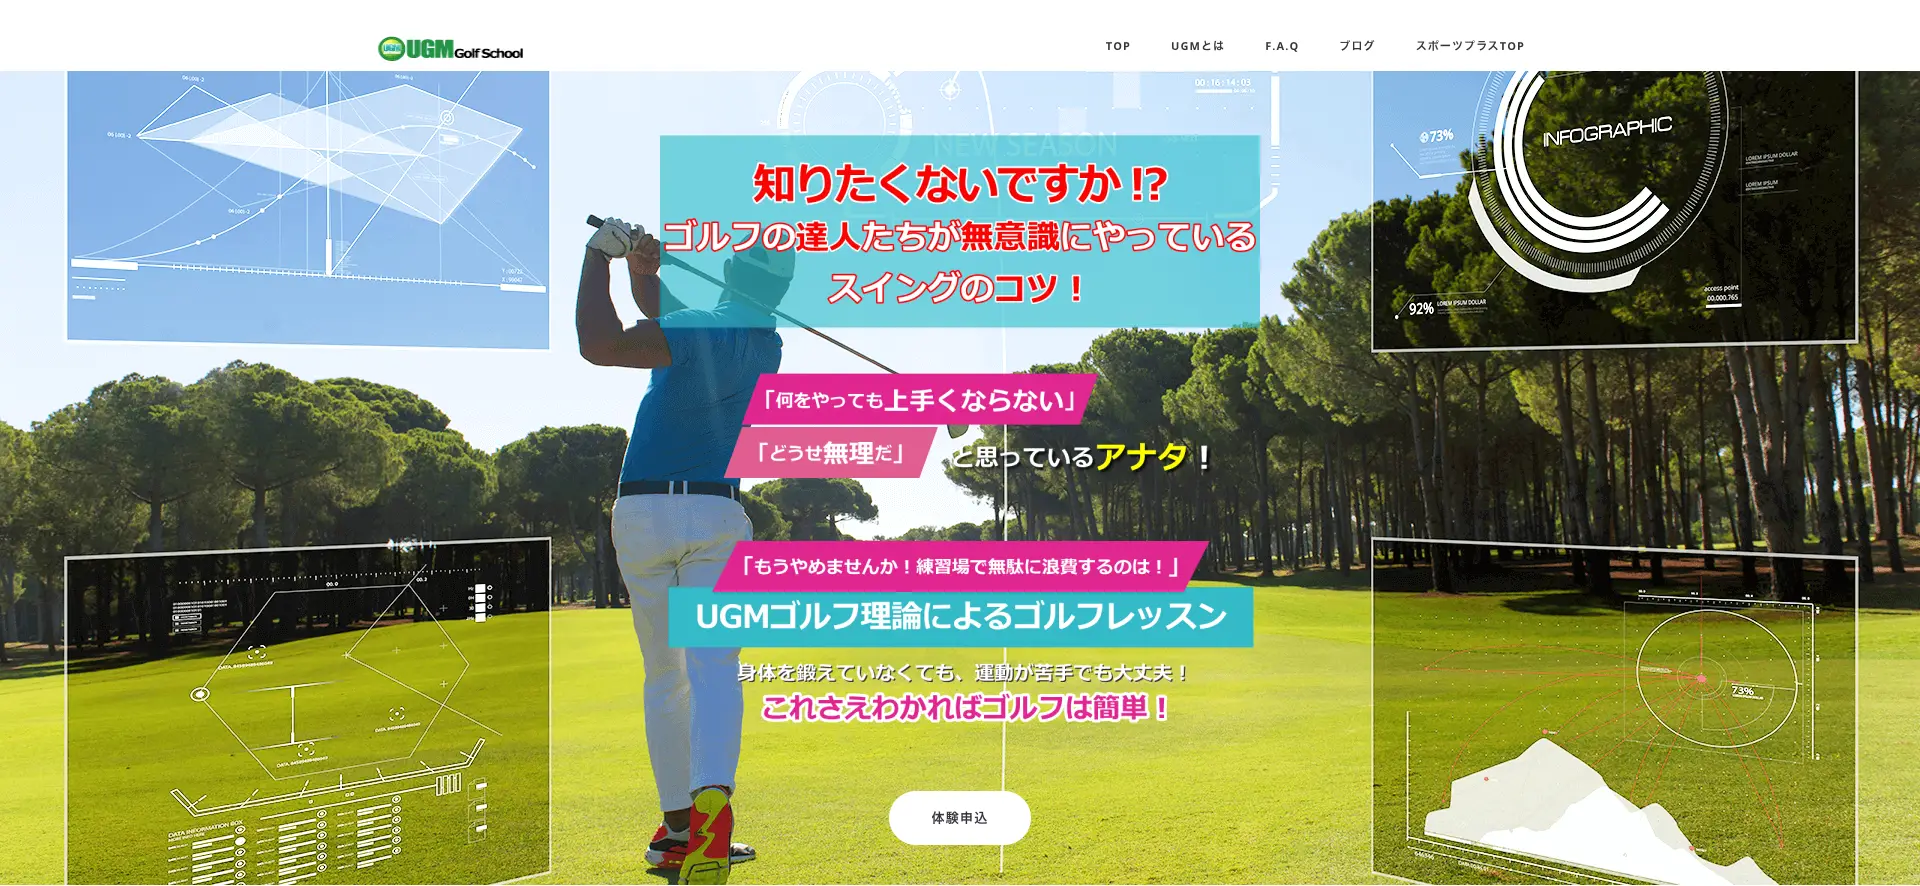 【千種区】UGMゴルフスクール 名古屋店